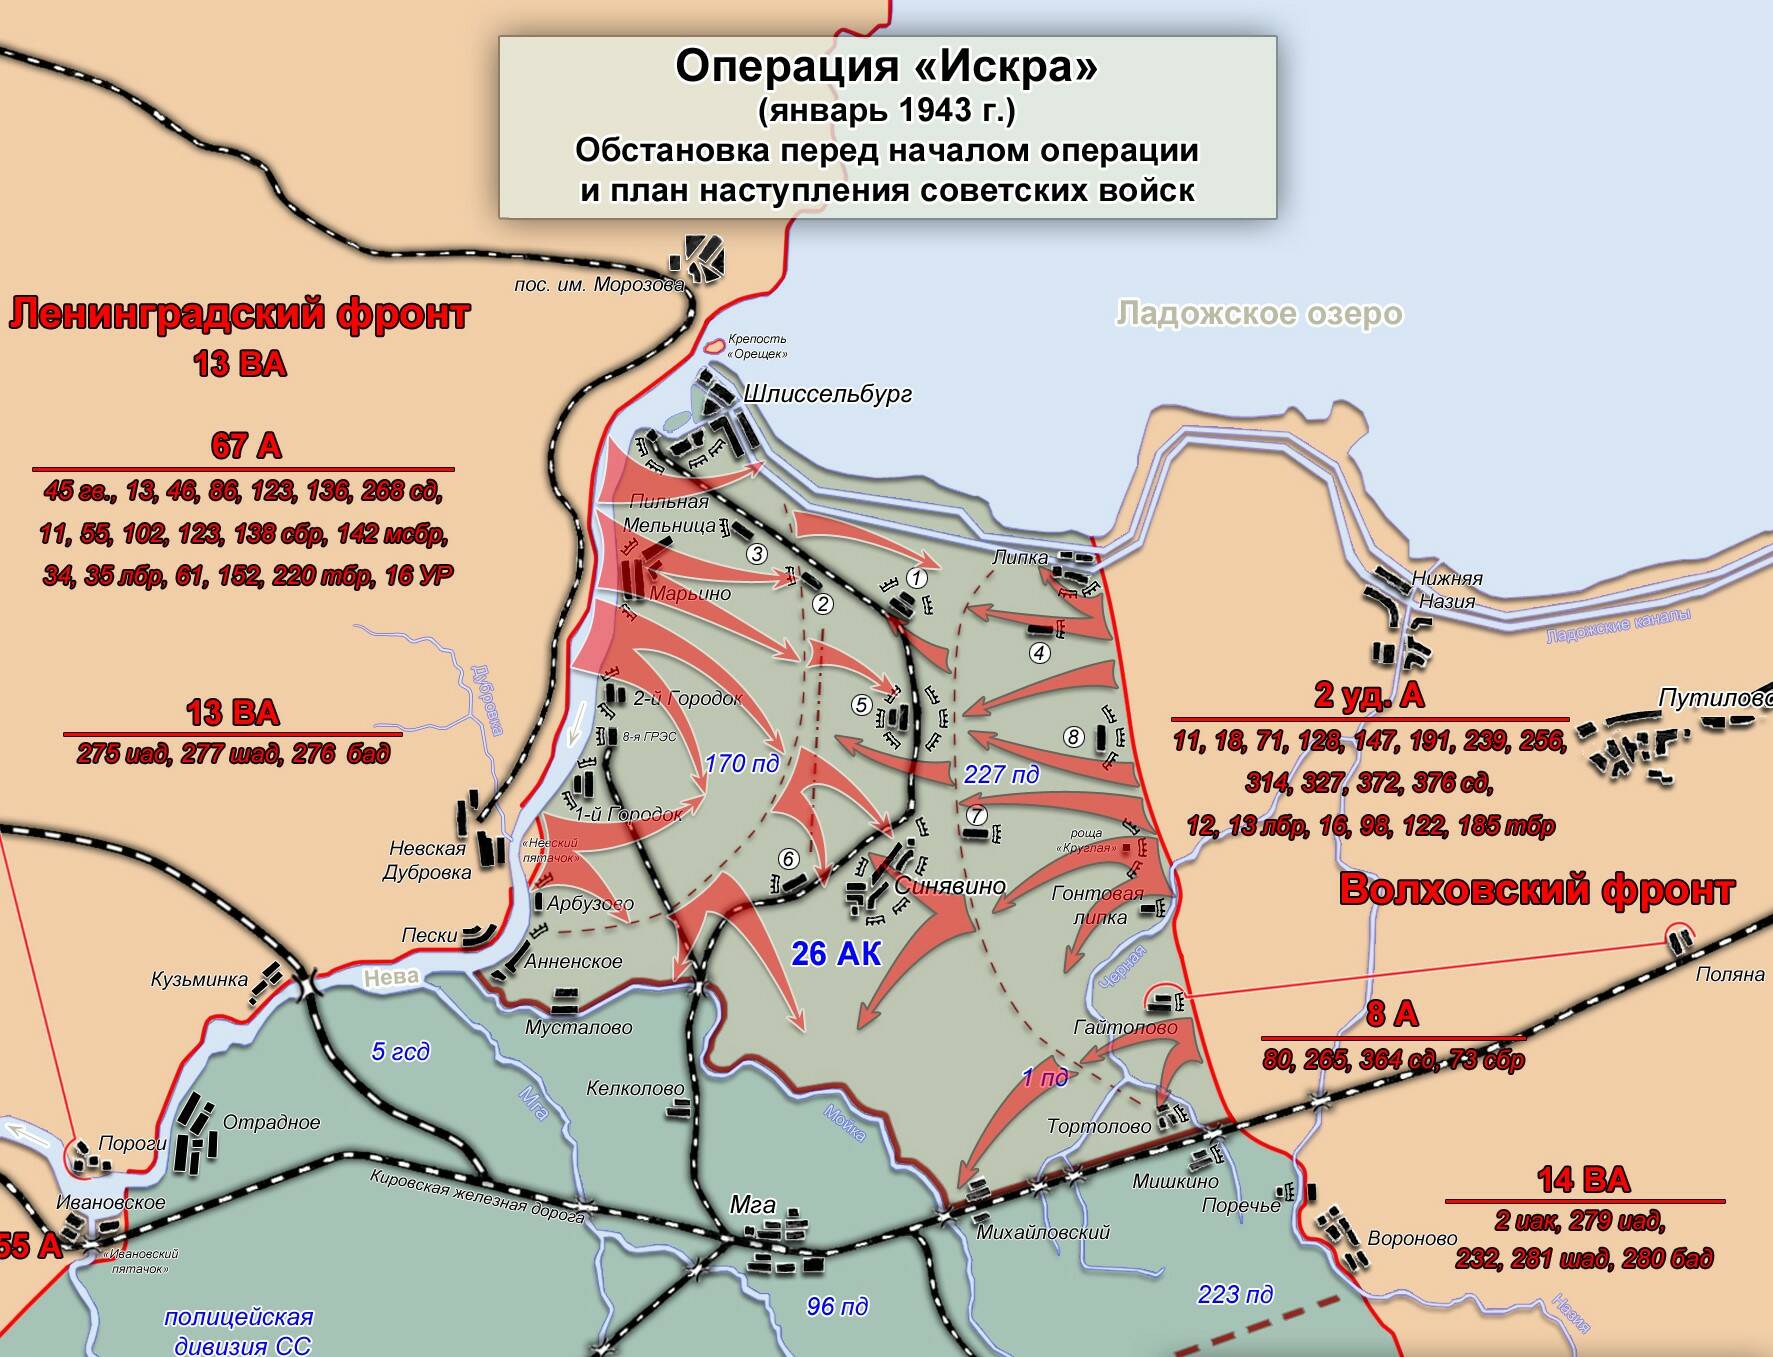 Операция «Искра». Расстановка сил перед началом операции и план наступления советских войск (фото: VT1978 CC BY-SA 3.0)